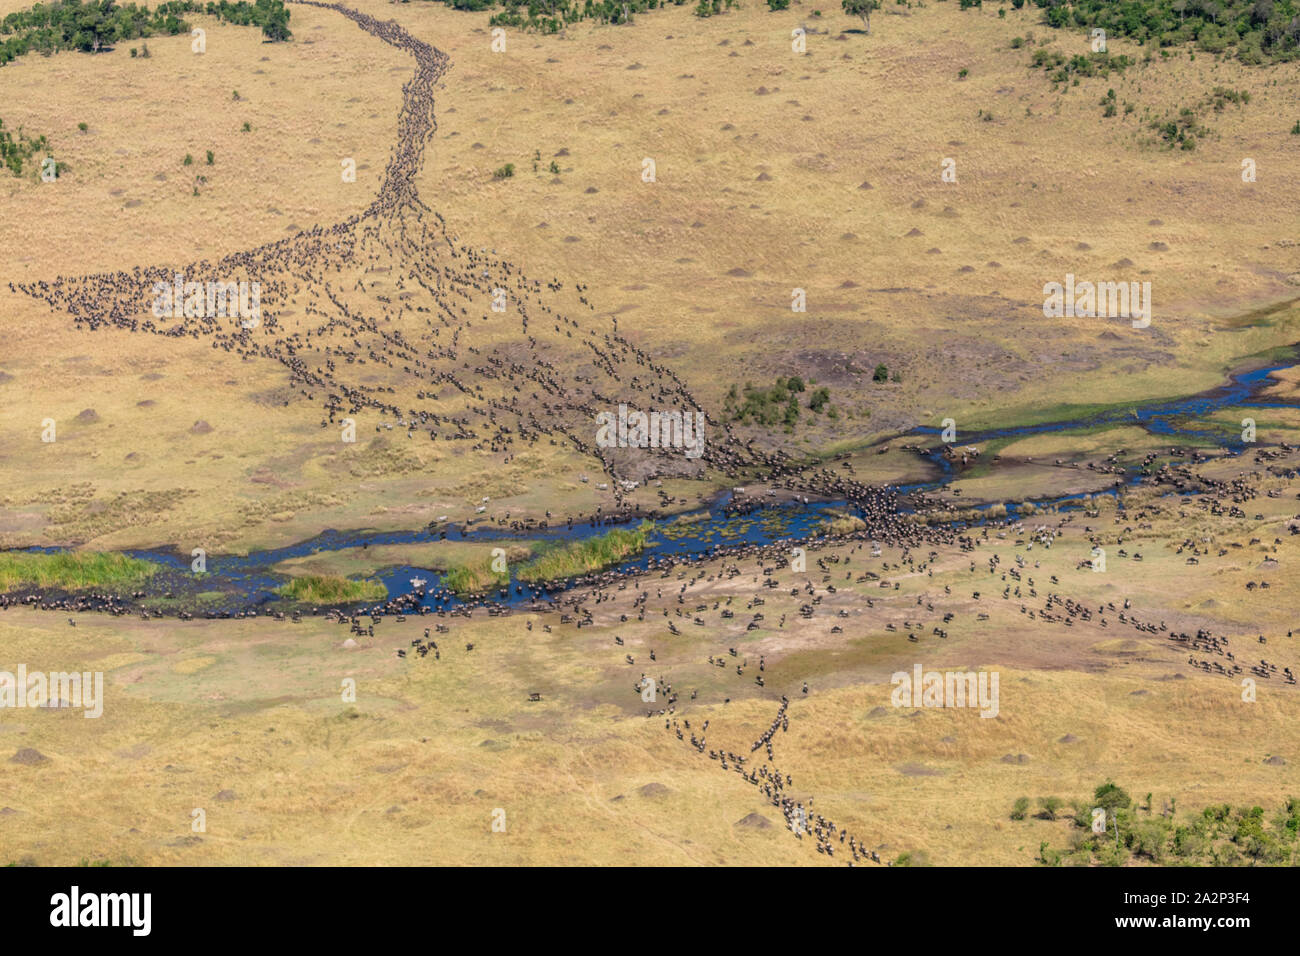 Vue aérienne de la migration annuelle des gnous, Masai Mara, Kenya Banque D'Images